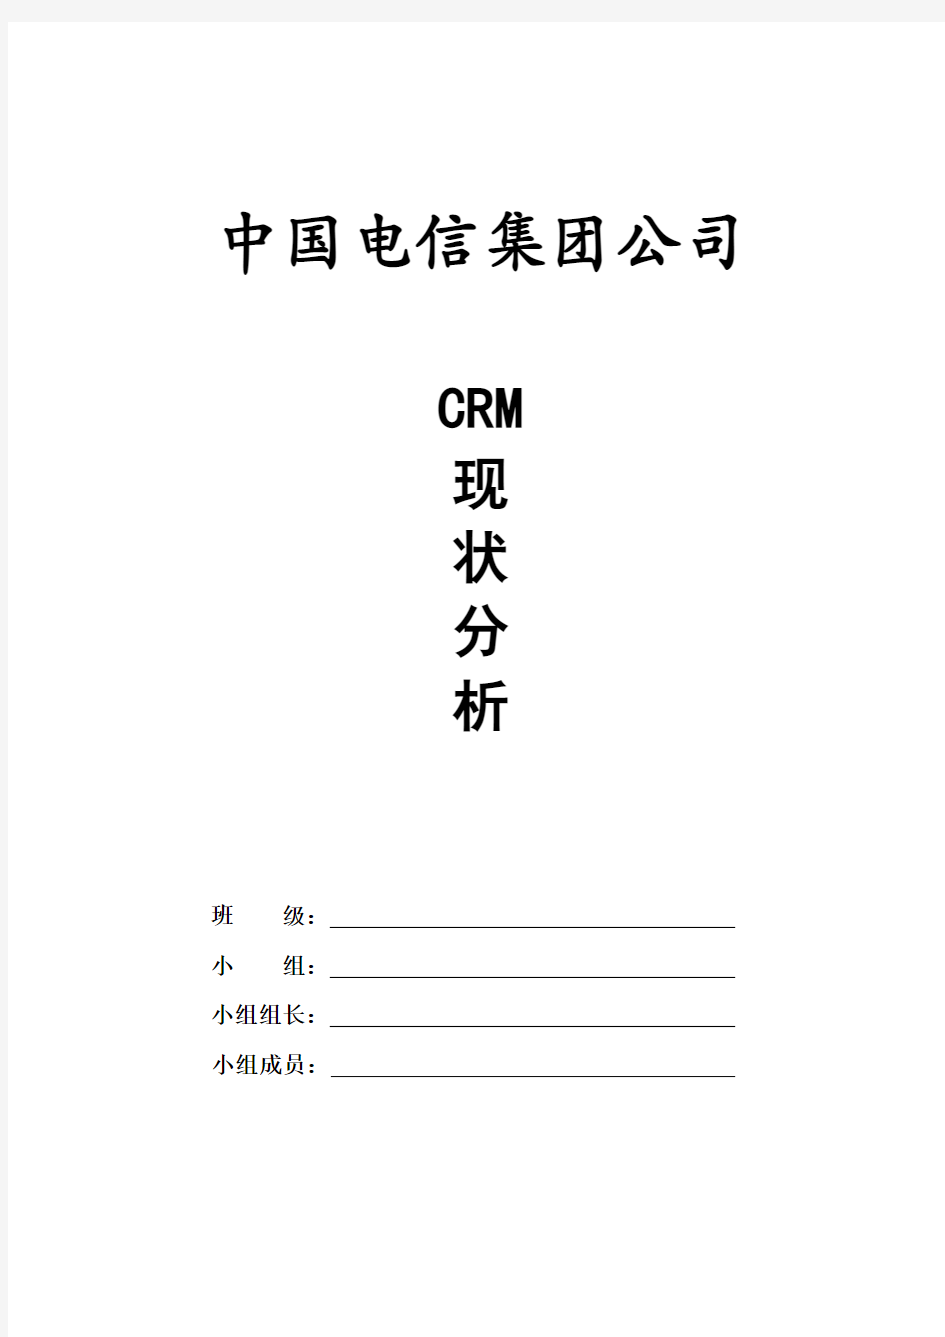 中国电信集团公司的CEM分析